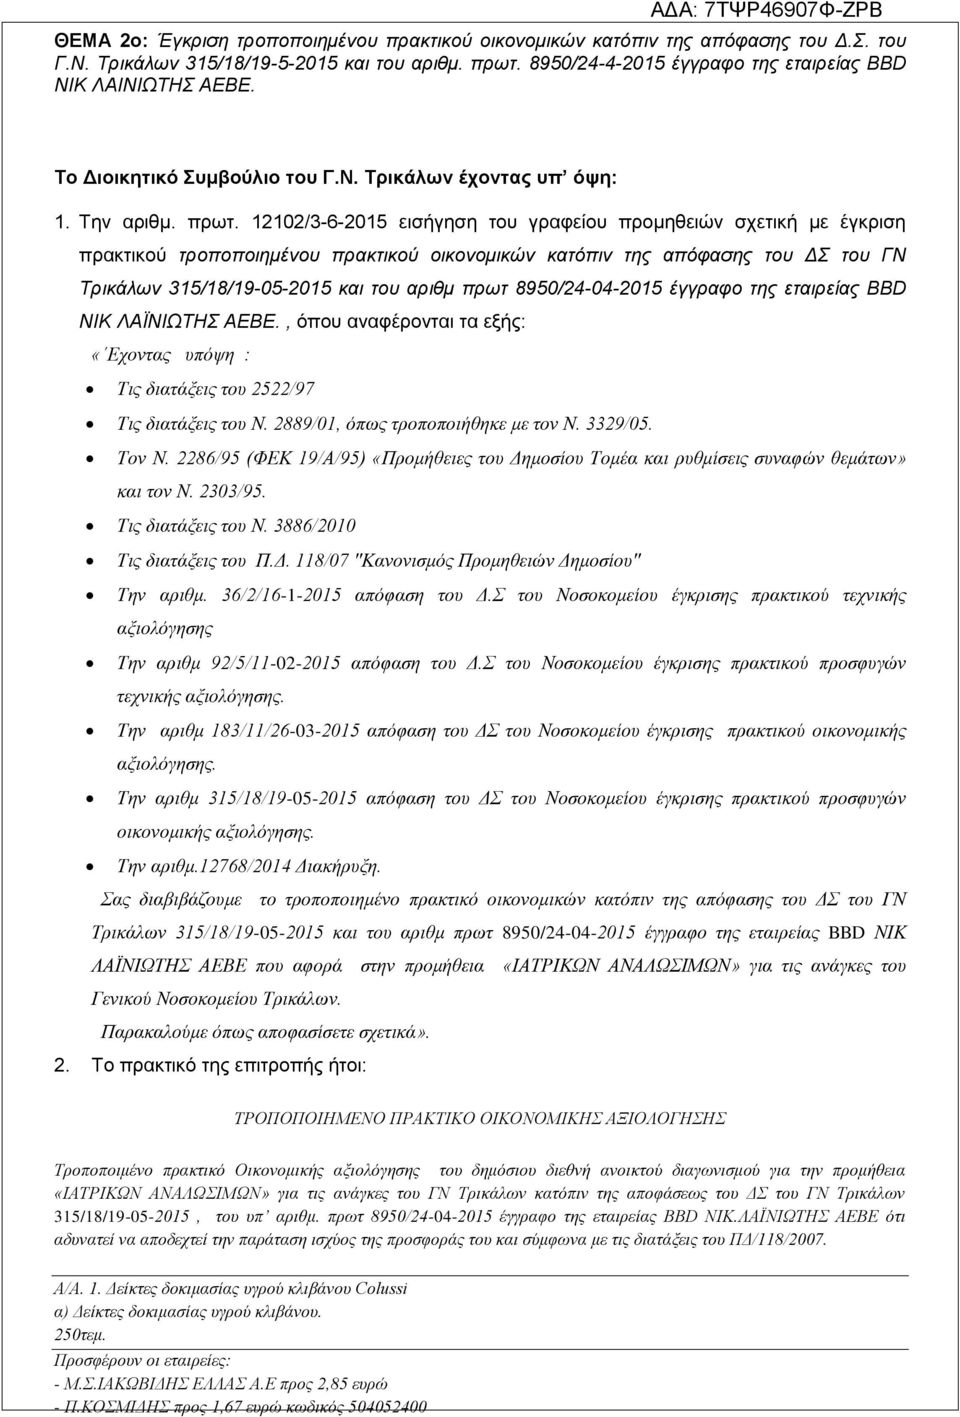 12102/3-6-2015 εισήγηση του γραφείου προμηθειών σχετική με έγκριση πρακτικού τροποποιημένου πρακτικού οικονομικών κατόπιν της απόφασης του ΔΣ του ΓΝ Τρικάλων 315/18/19-05-2015 και του αριθμ πρωτ